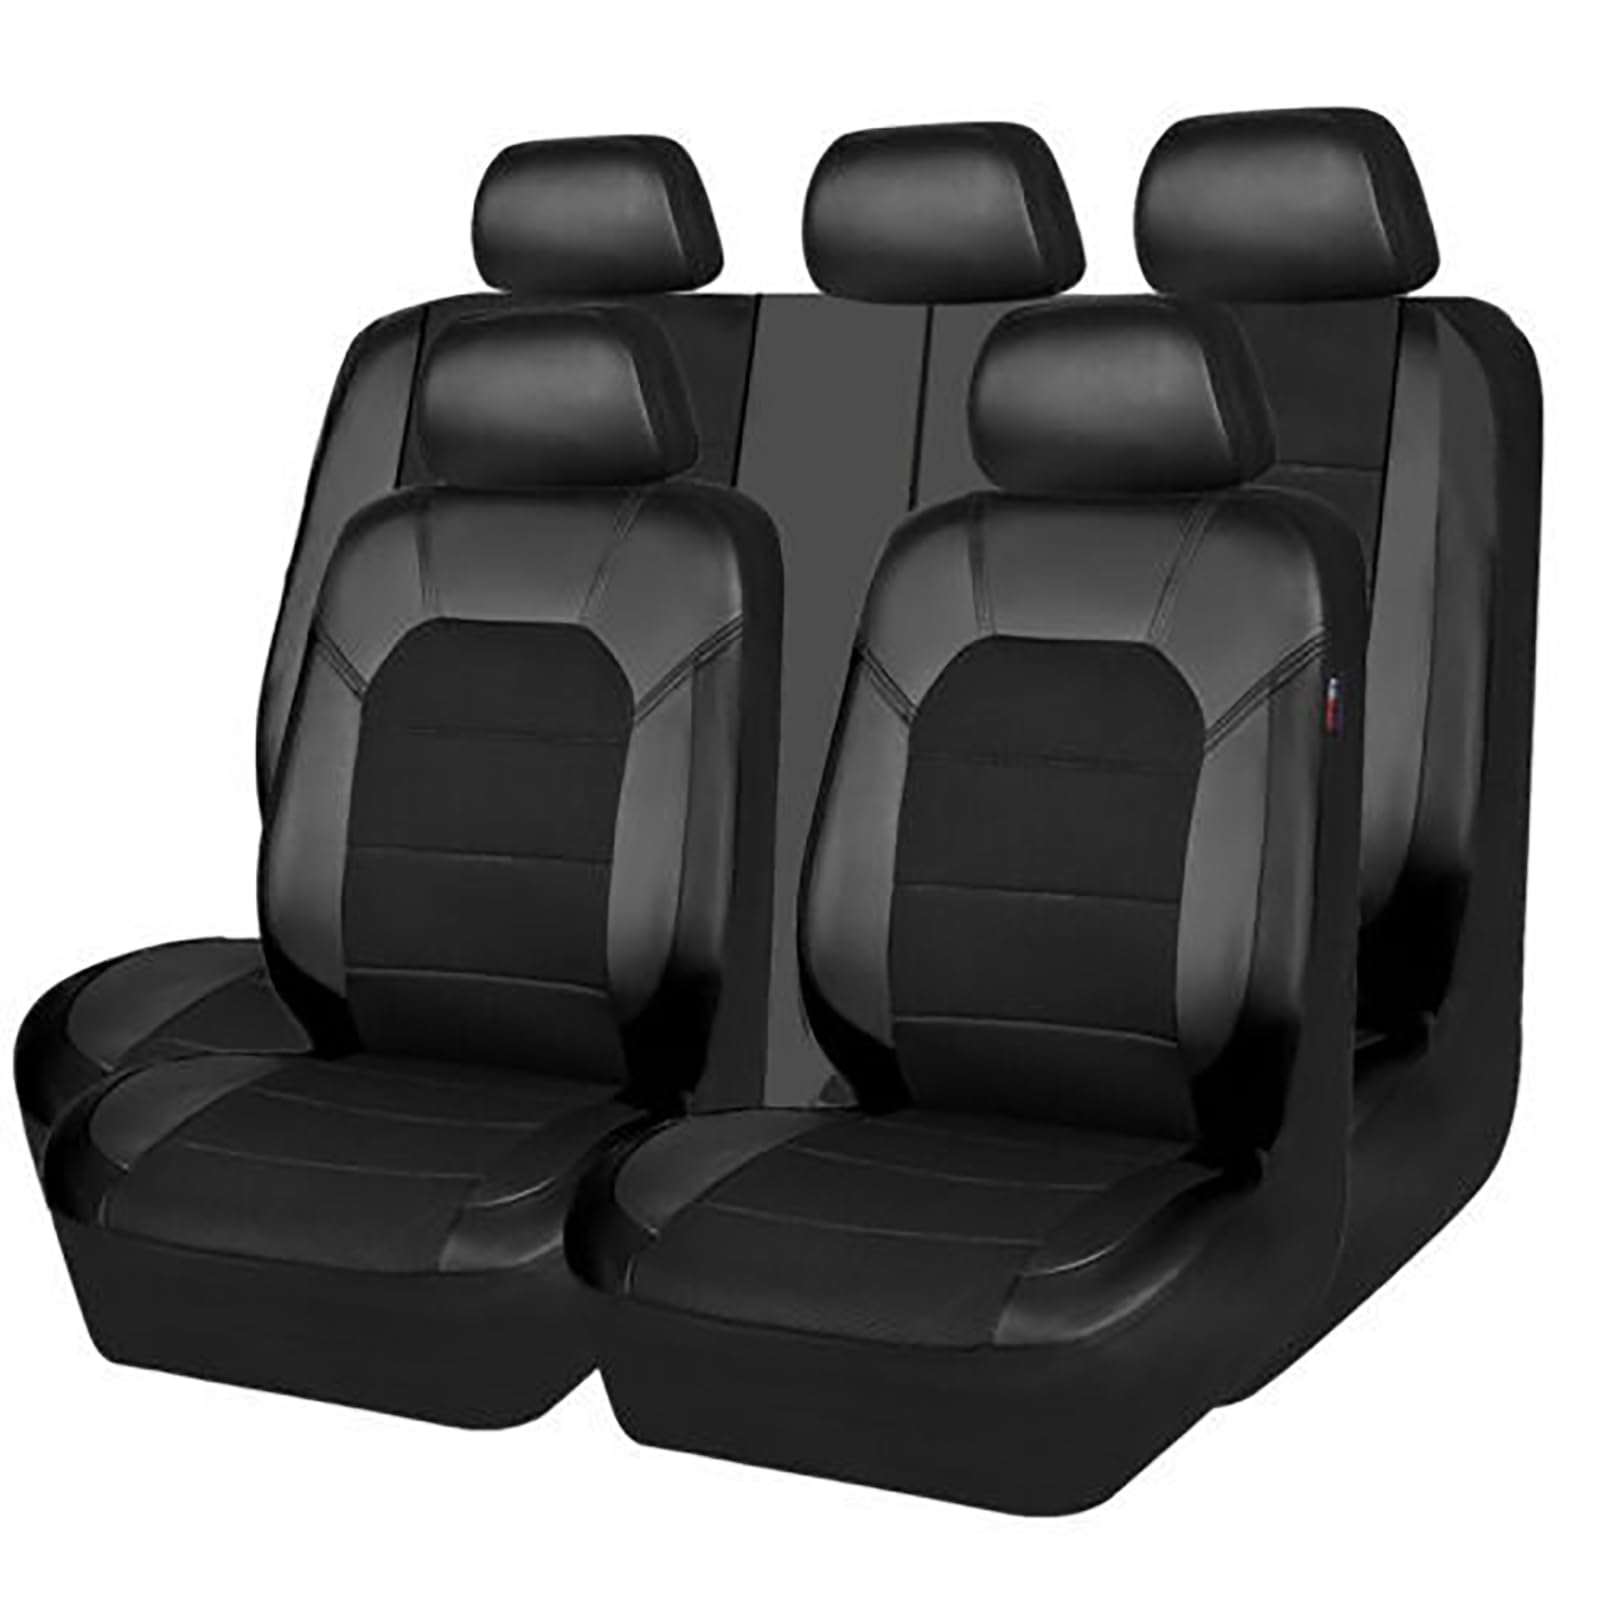 KLUFO Auto Leder Sitzbezüge Sets für VW Golf 8 MK8 2019 2020 2021 2022 2023 2024 5-Seat, Auto Sitzschoner Wasserdichter VerschleißFest Atmungsaktiv Zubehör,Black von KLUFO